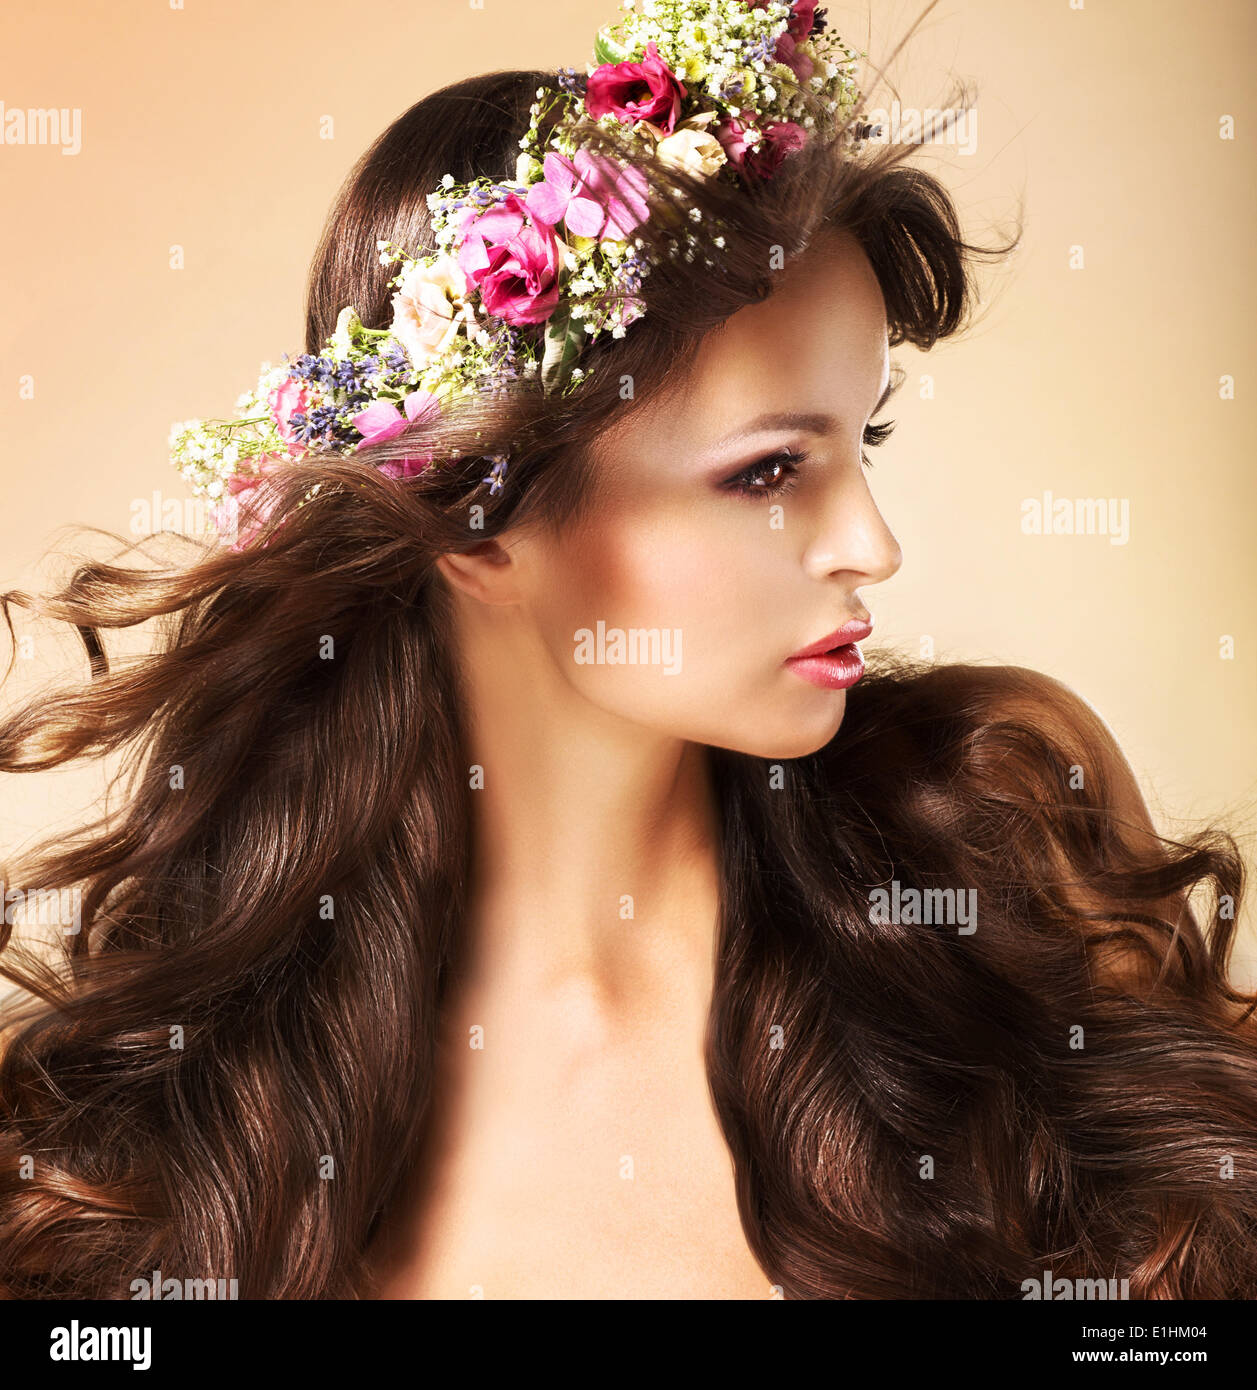 Retrato de joven mujer Auburn con largos pelos que fluye y flores silvestres Foto de stock